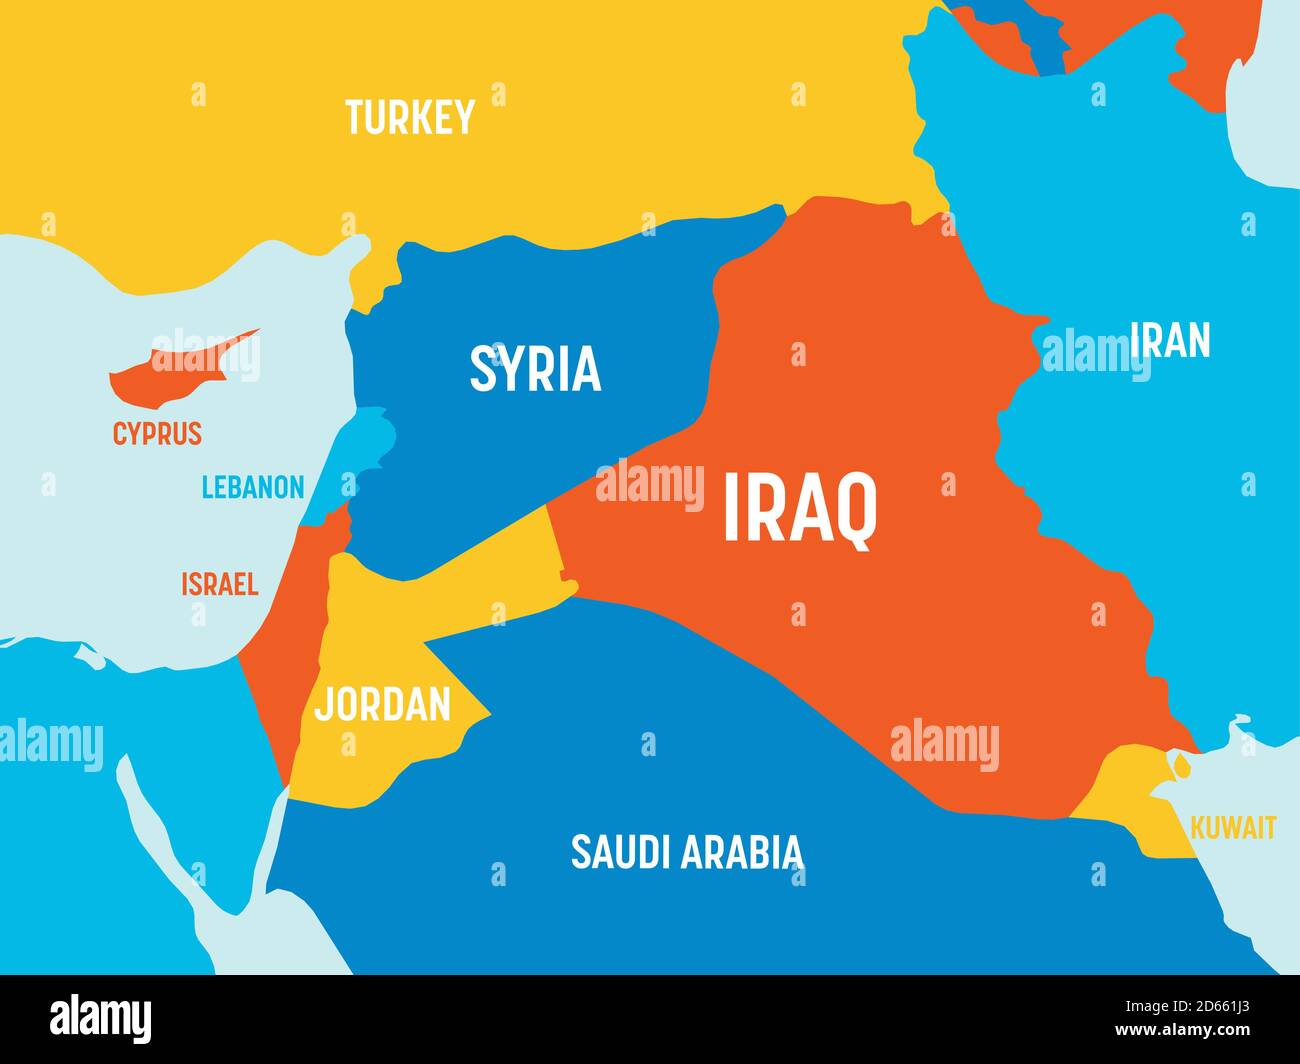 Karte für den Nahen Osten - 4 helle Farbtöne. Hoch detaillierte politische Karte des Nahen Ostens und der arabischen Halbinsel Region mit Land, Meer und Meer Namen Kennzeichnung. Stock Vektor